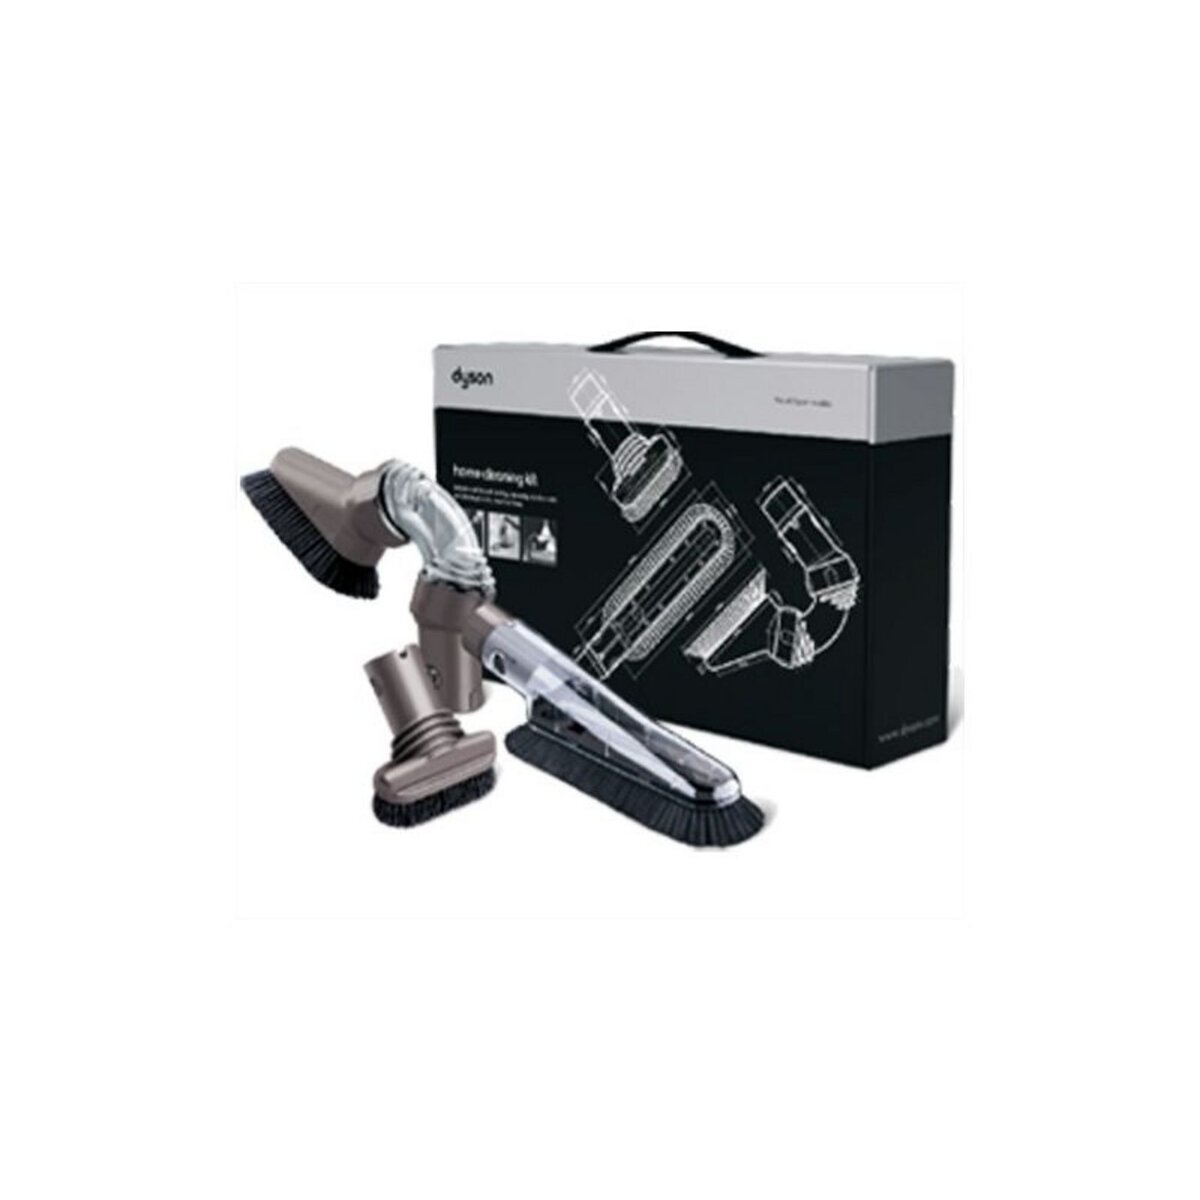 Accessoire aspirateur DYSON Kit de nettoyage maison 912772-04 Pas Cher 